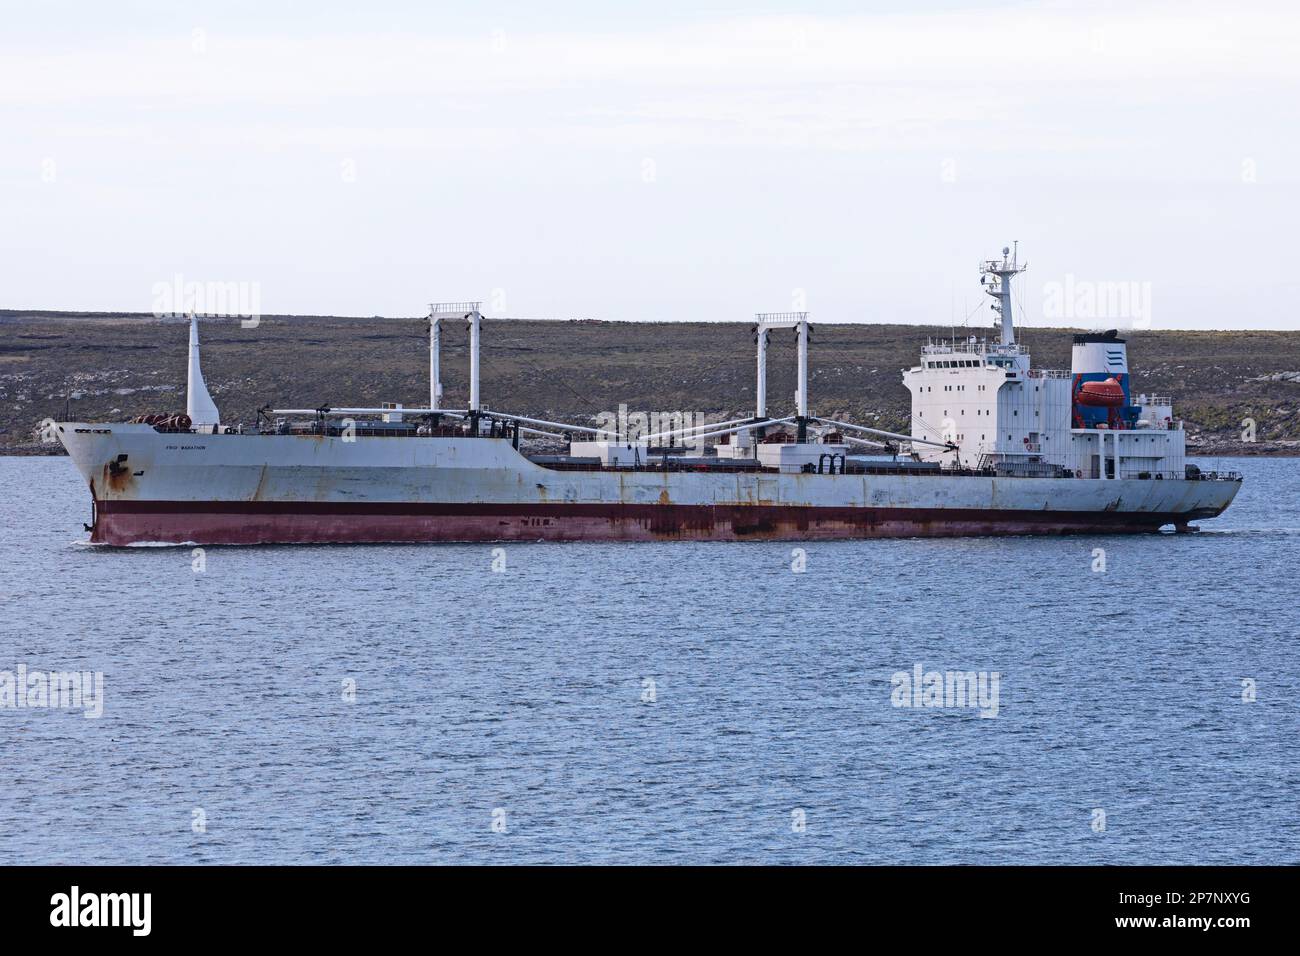 Der FRIO MARATHON, ein Kühlfrachtschiff, das unter der Flagge Panamas fährt, wurde 1990 erbaut und im Hafen von Stanley, Falkland Islands, vor Anker gelegt. Stockfoto